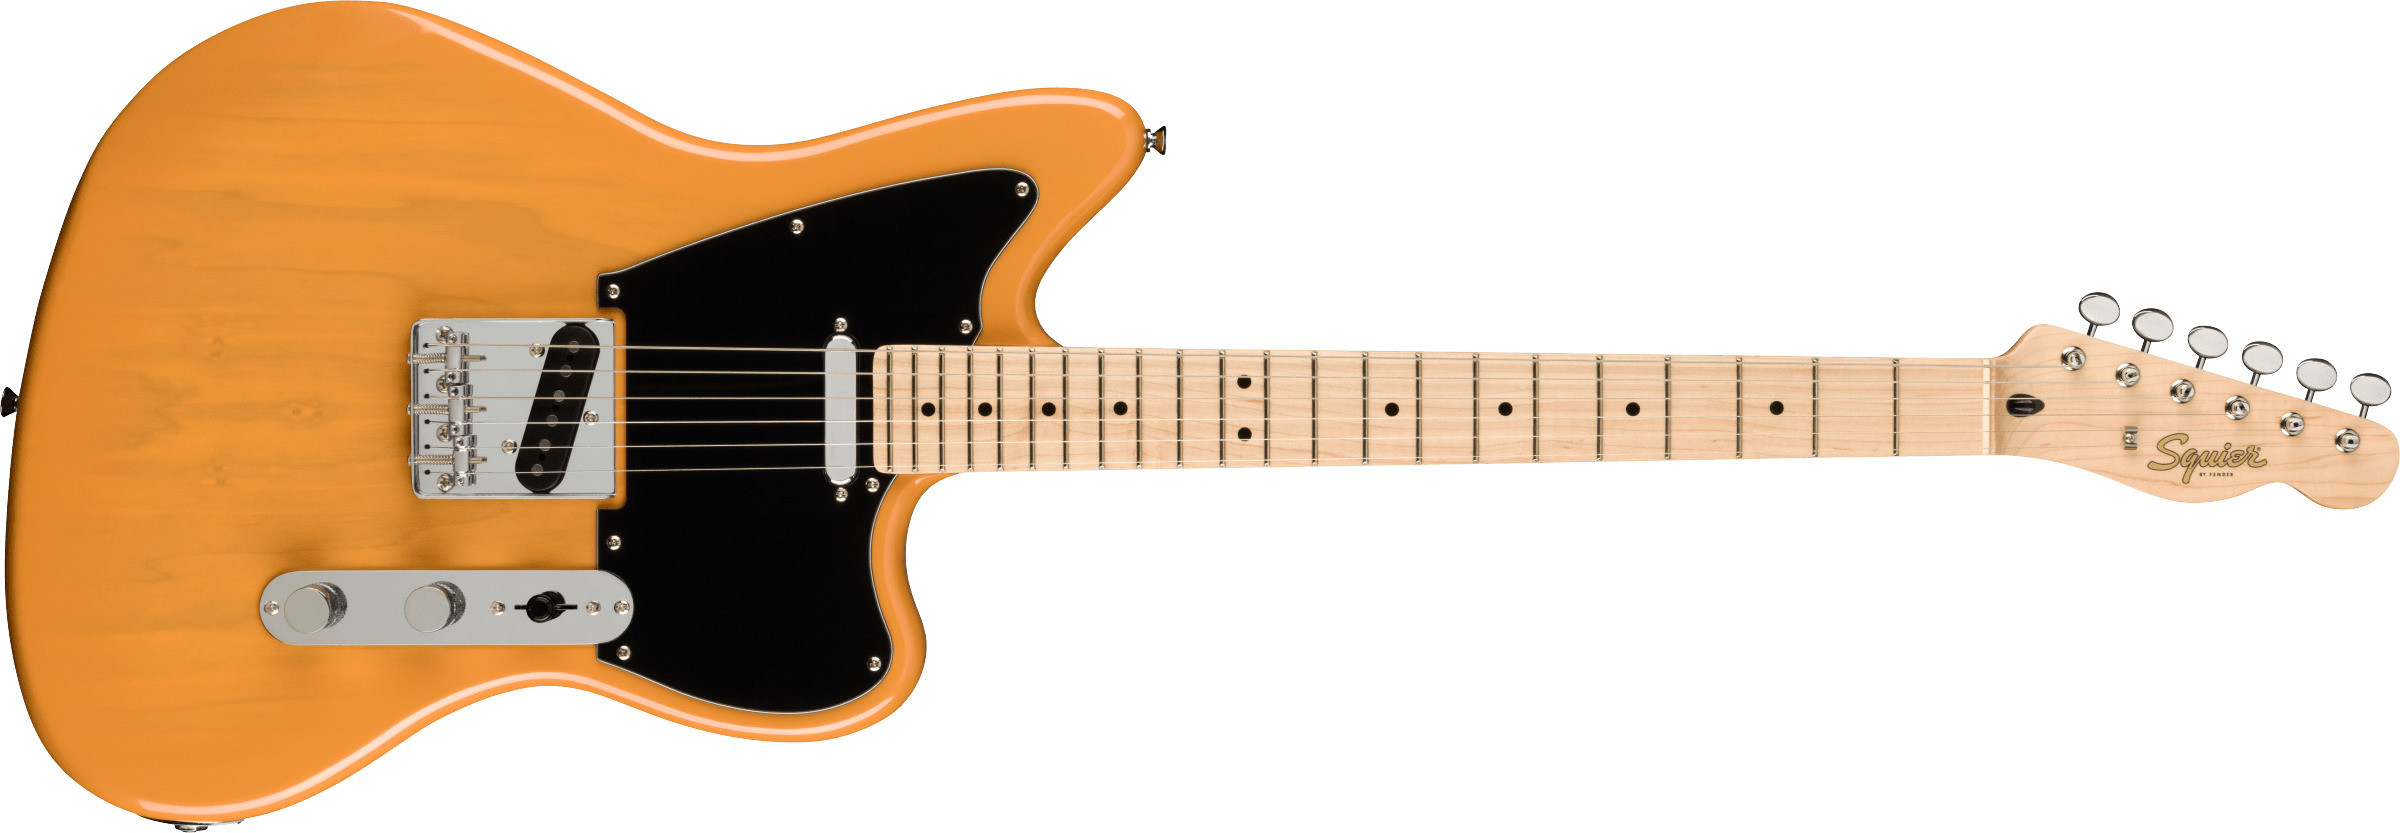 Billede af Fender Squier Paranormal Offset Telecaster El-guitar (Butterscotch Blonde)